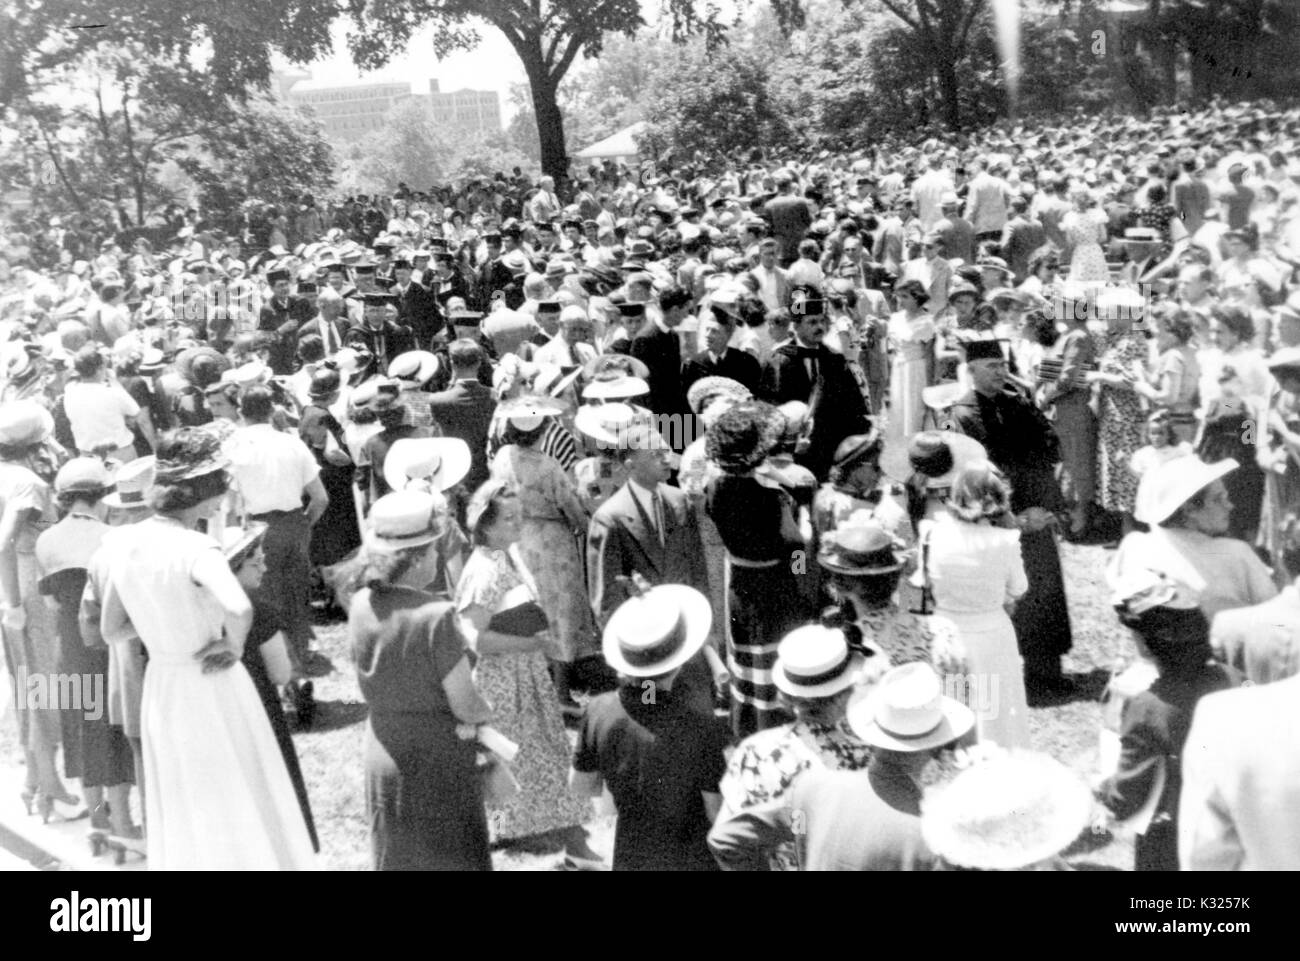 Au jour dit, une foule importante de la famille, les amis, et vous reposer à l'extérieur dans l'observation des clusters une allée de diplômés et membres de la faculté, une action commune portant des casquettes, des robes, robes, et l'Université Johns Hopkins, Baltimore, Maryland, juin, 1949. Banque D'Images